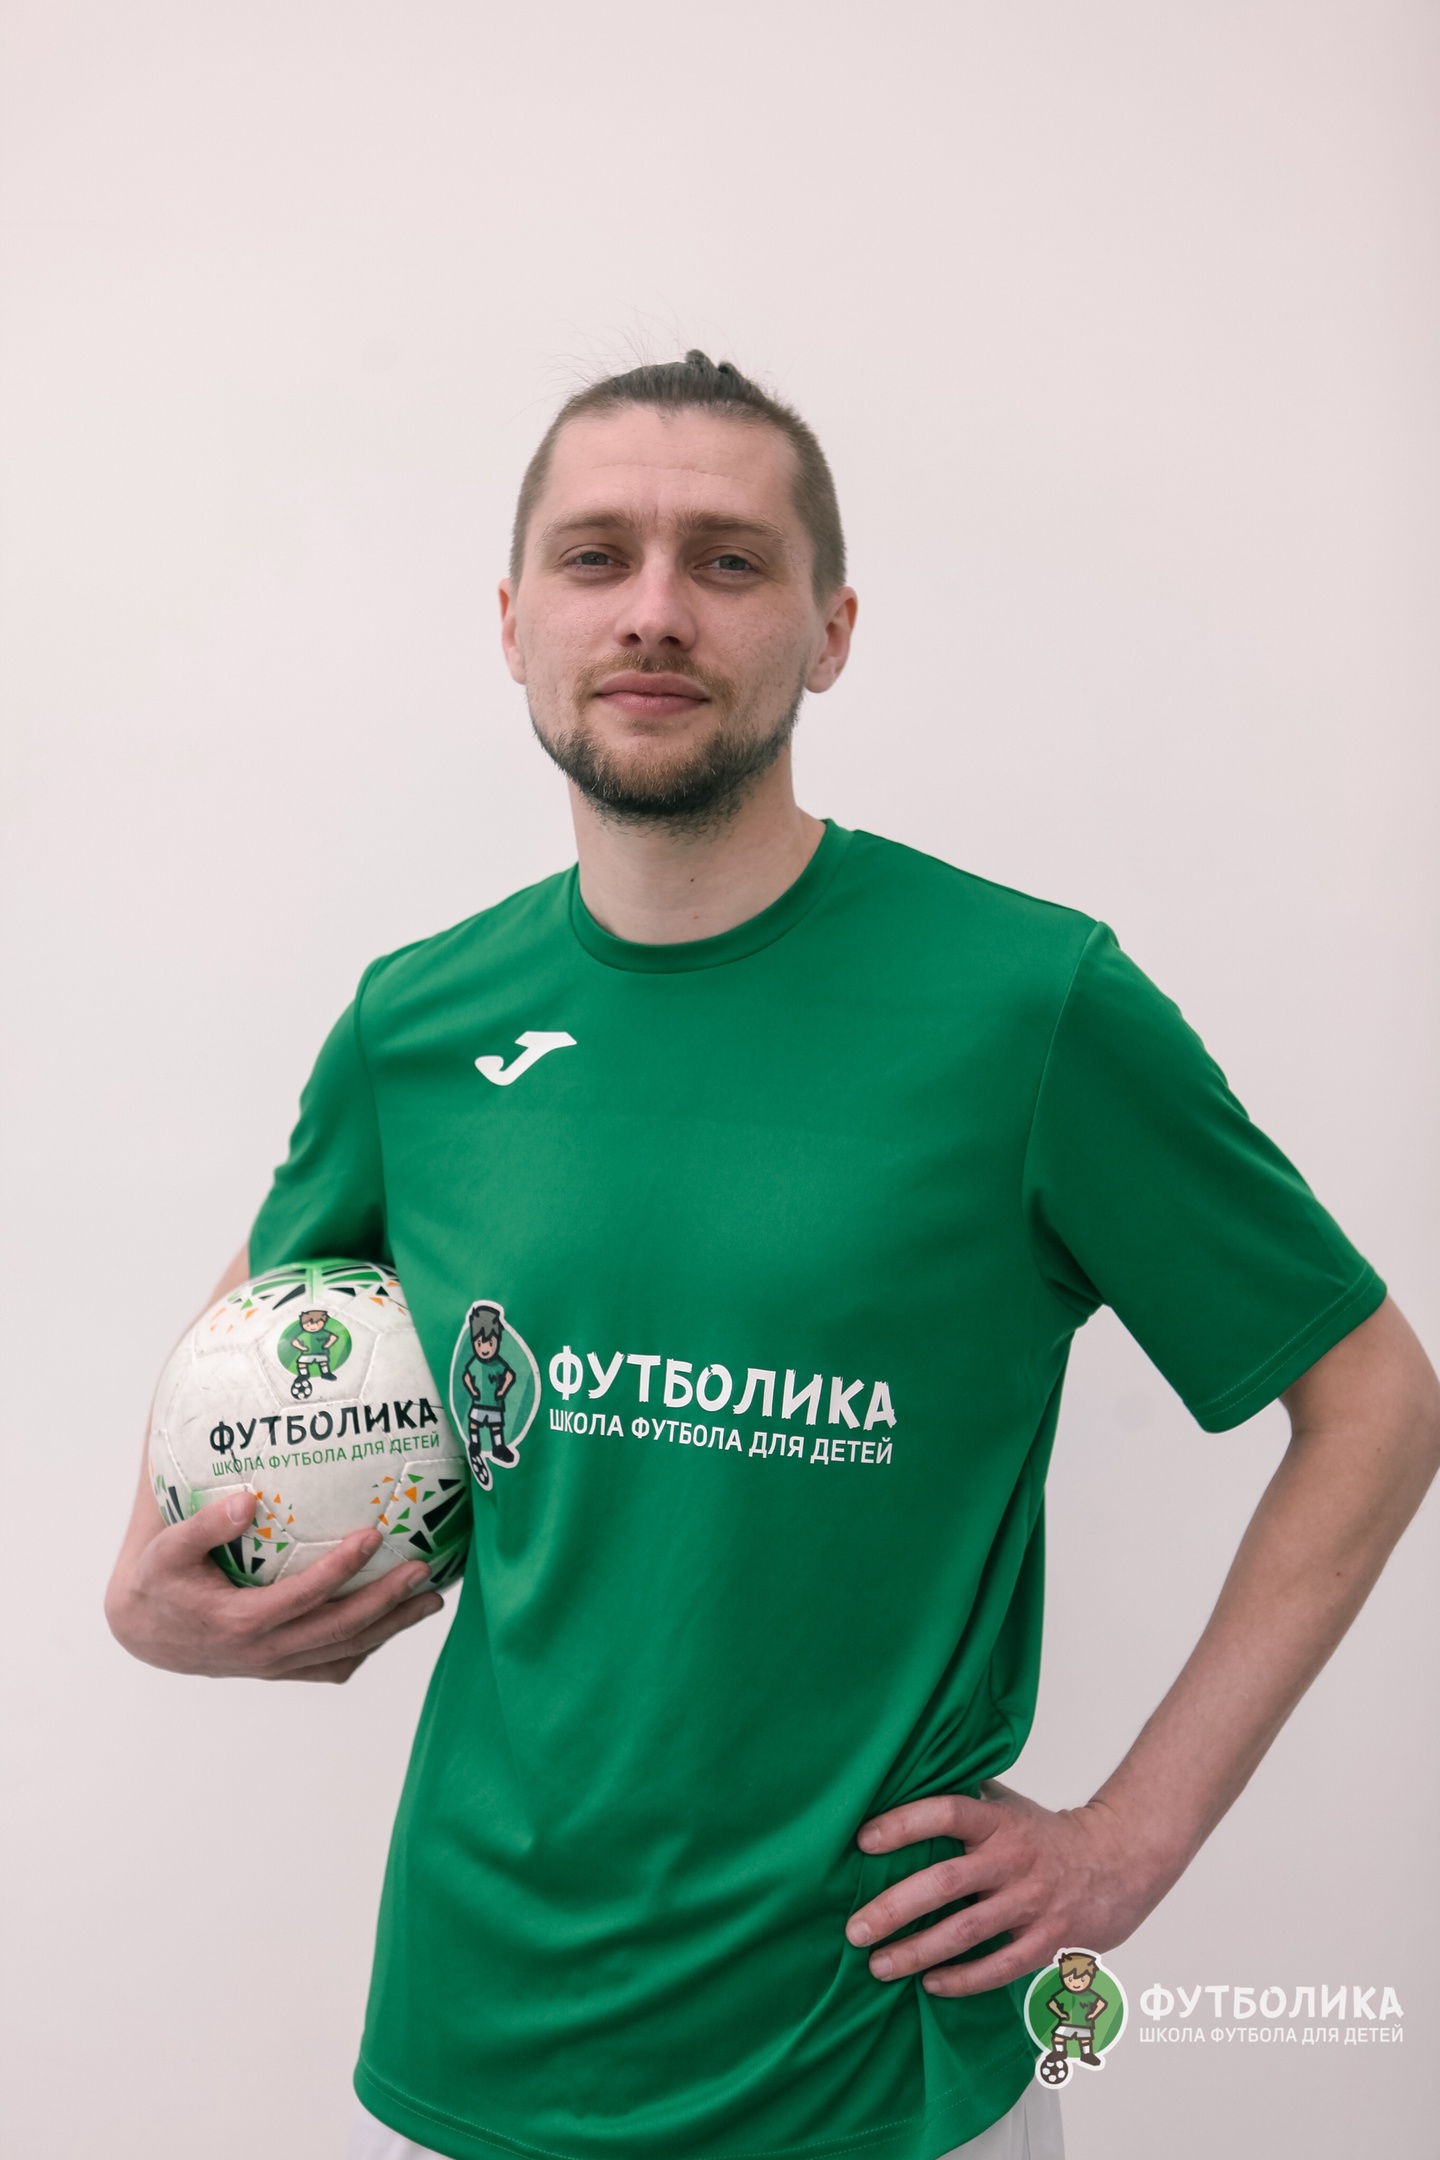 тренер футболики Сальников Егор